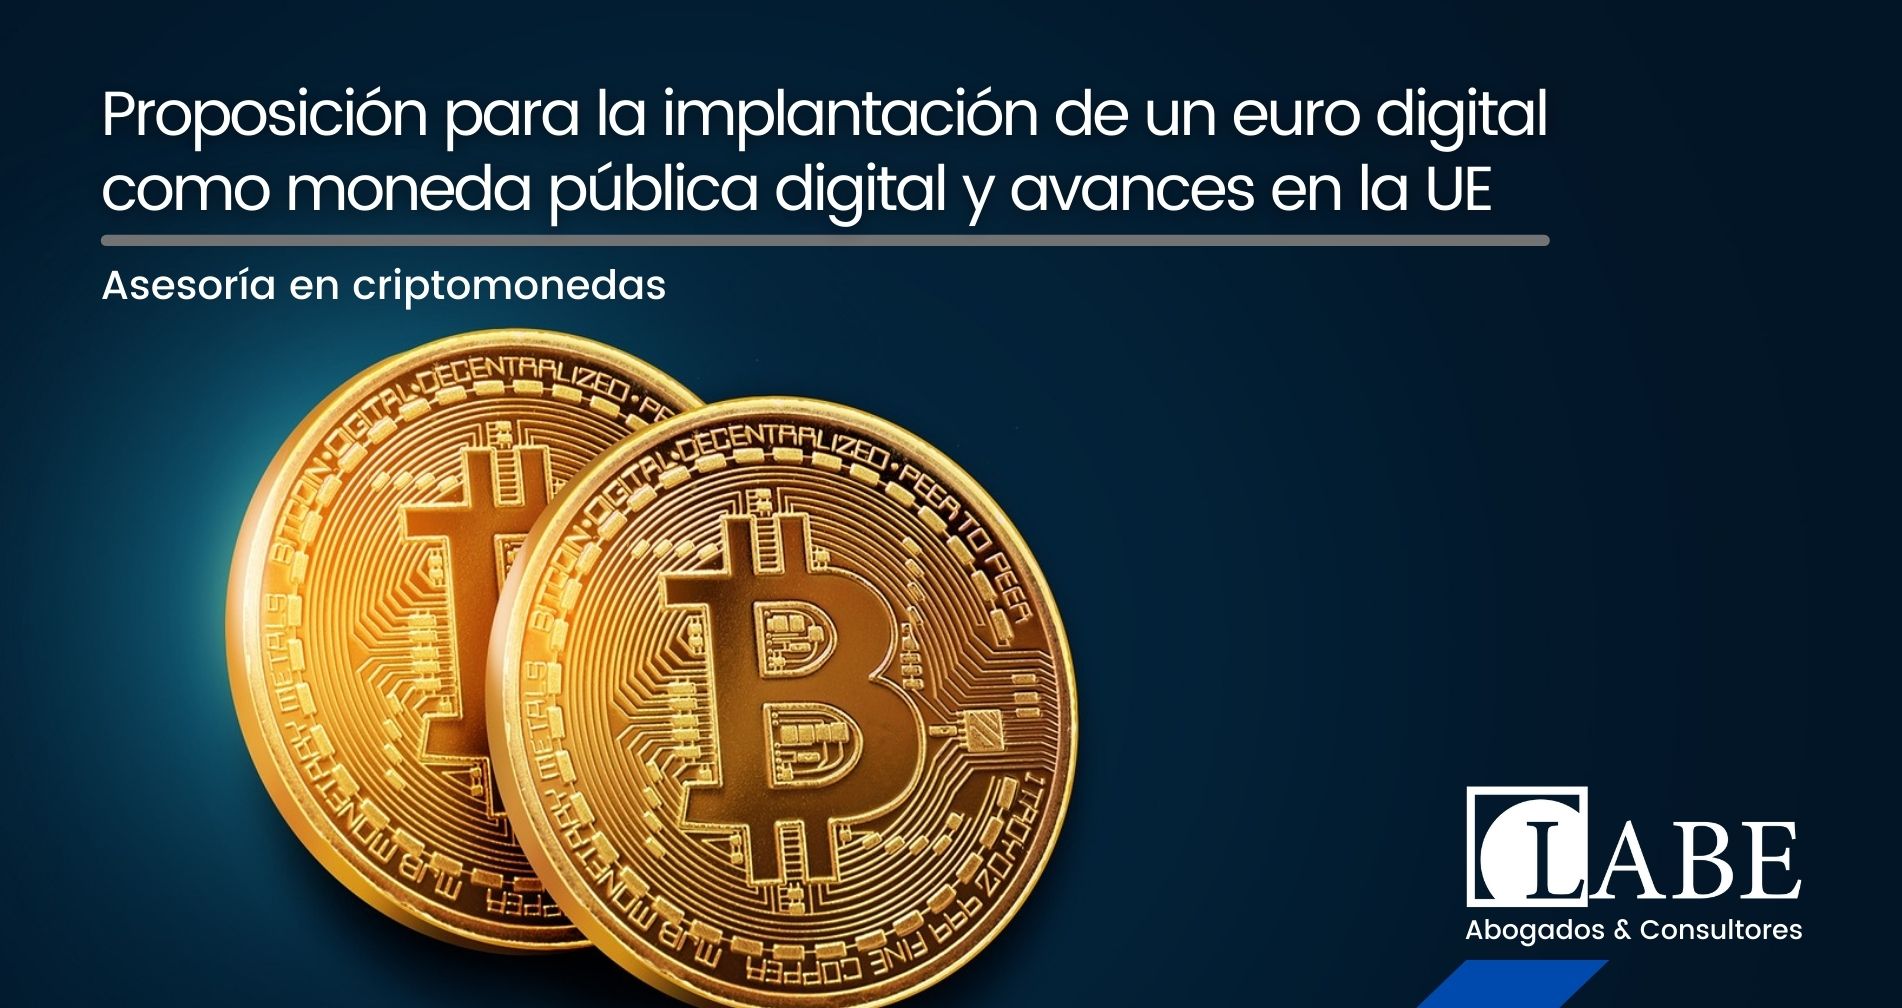 Proposición para la implantación de un euro digital como moneda pública digital y avances en la UE